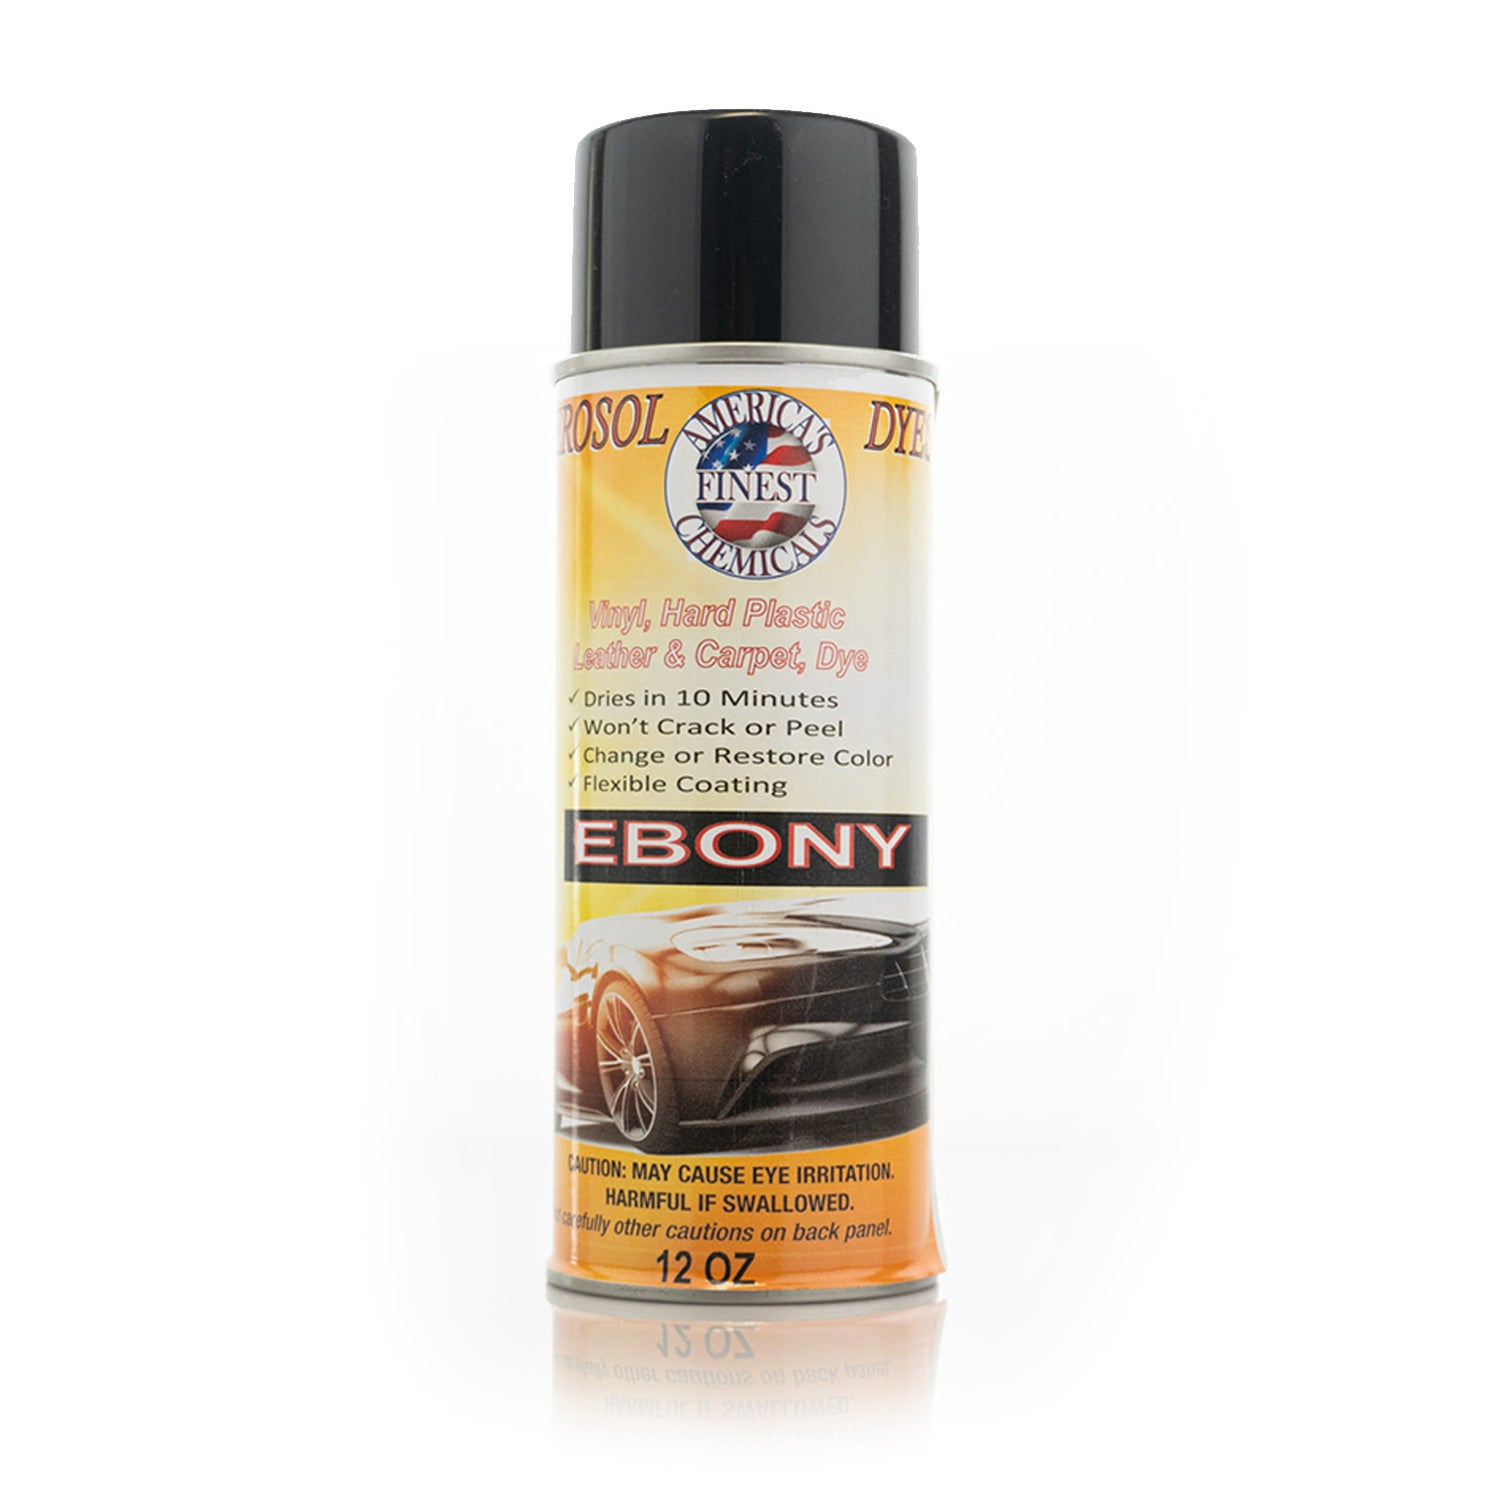 ebony-carpet-dye-aerosol-spray